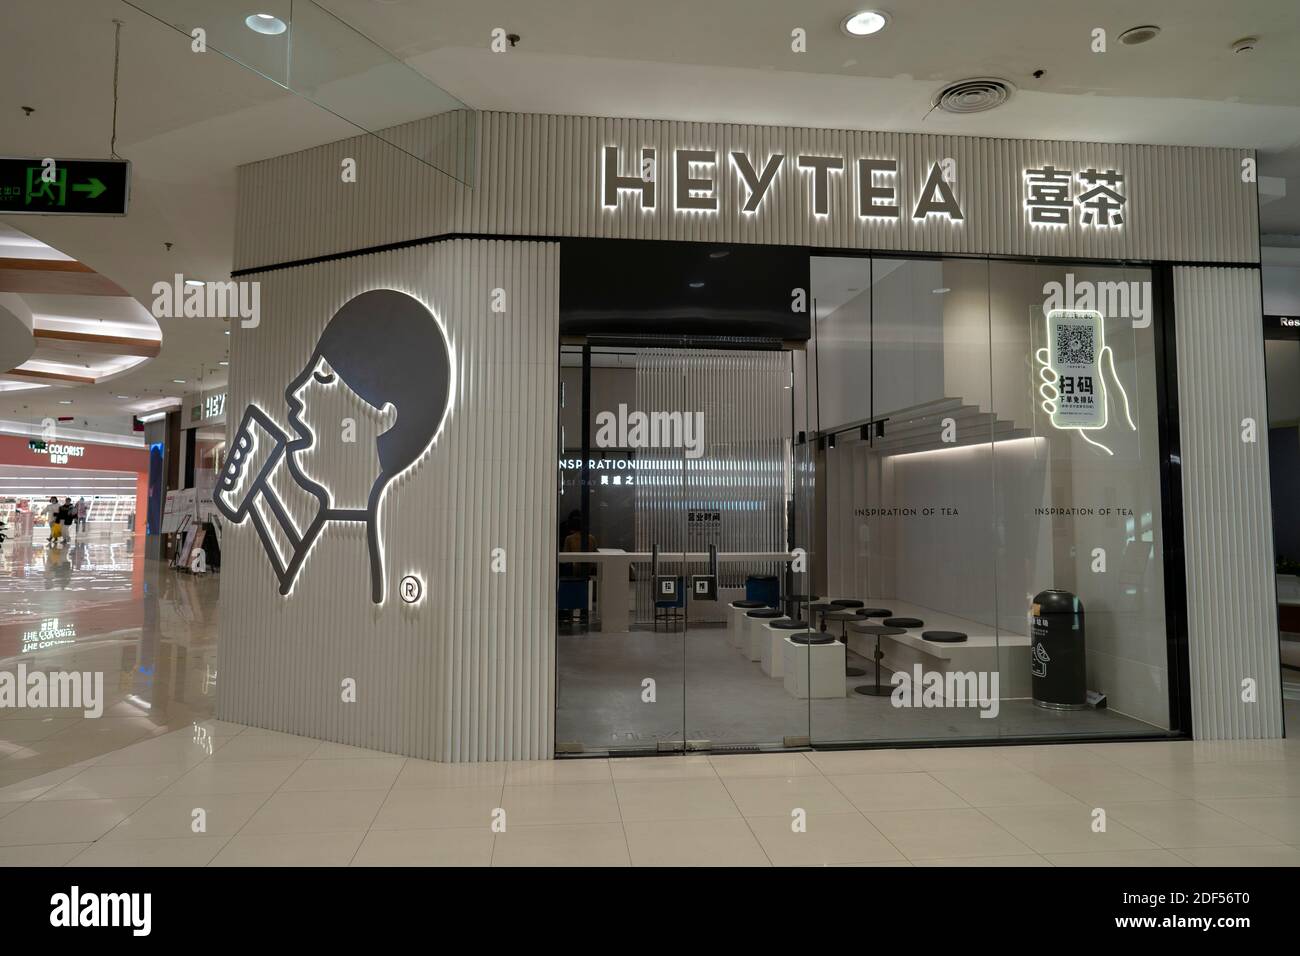 Un magasin Heytea dans un centre commercial. Heytea est une marque de boissons de mode populaire en Chine. Banque D'Images